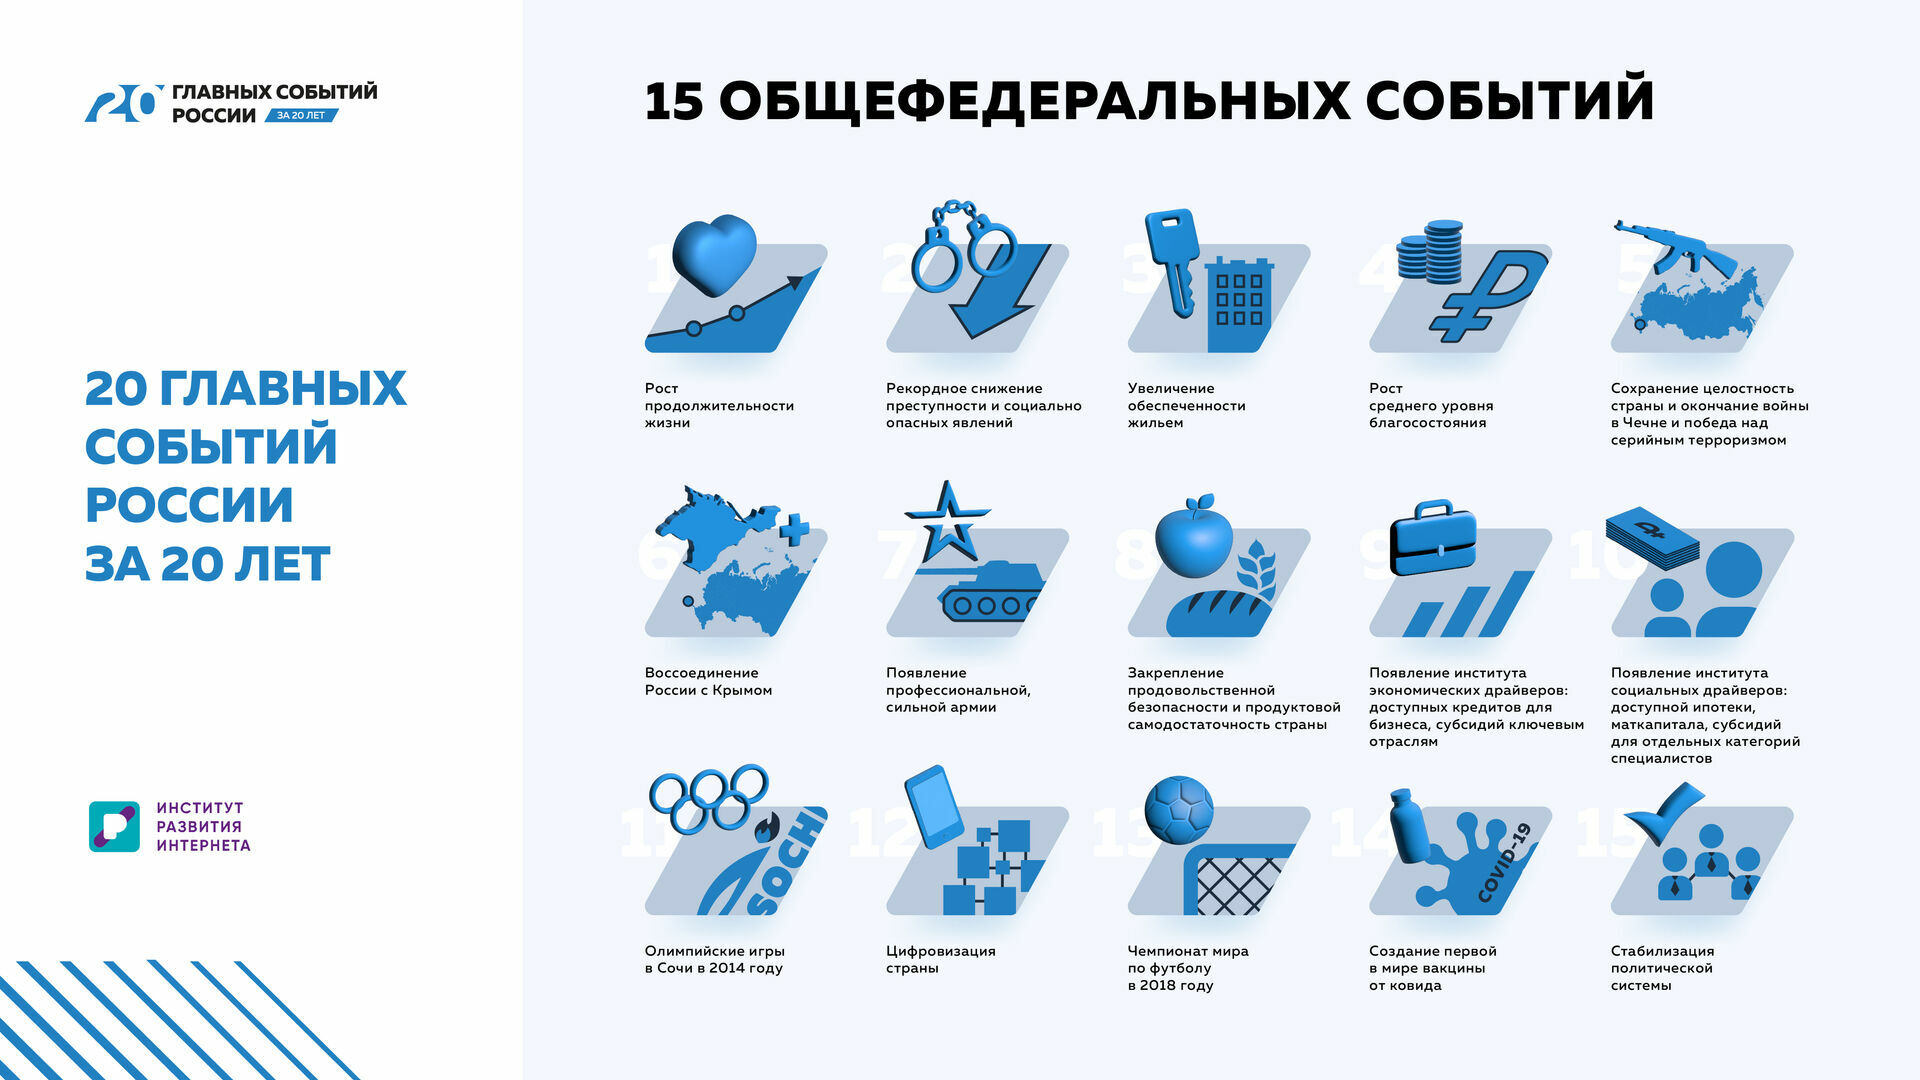 20 главных событий России за 20 лет